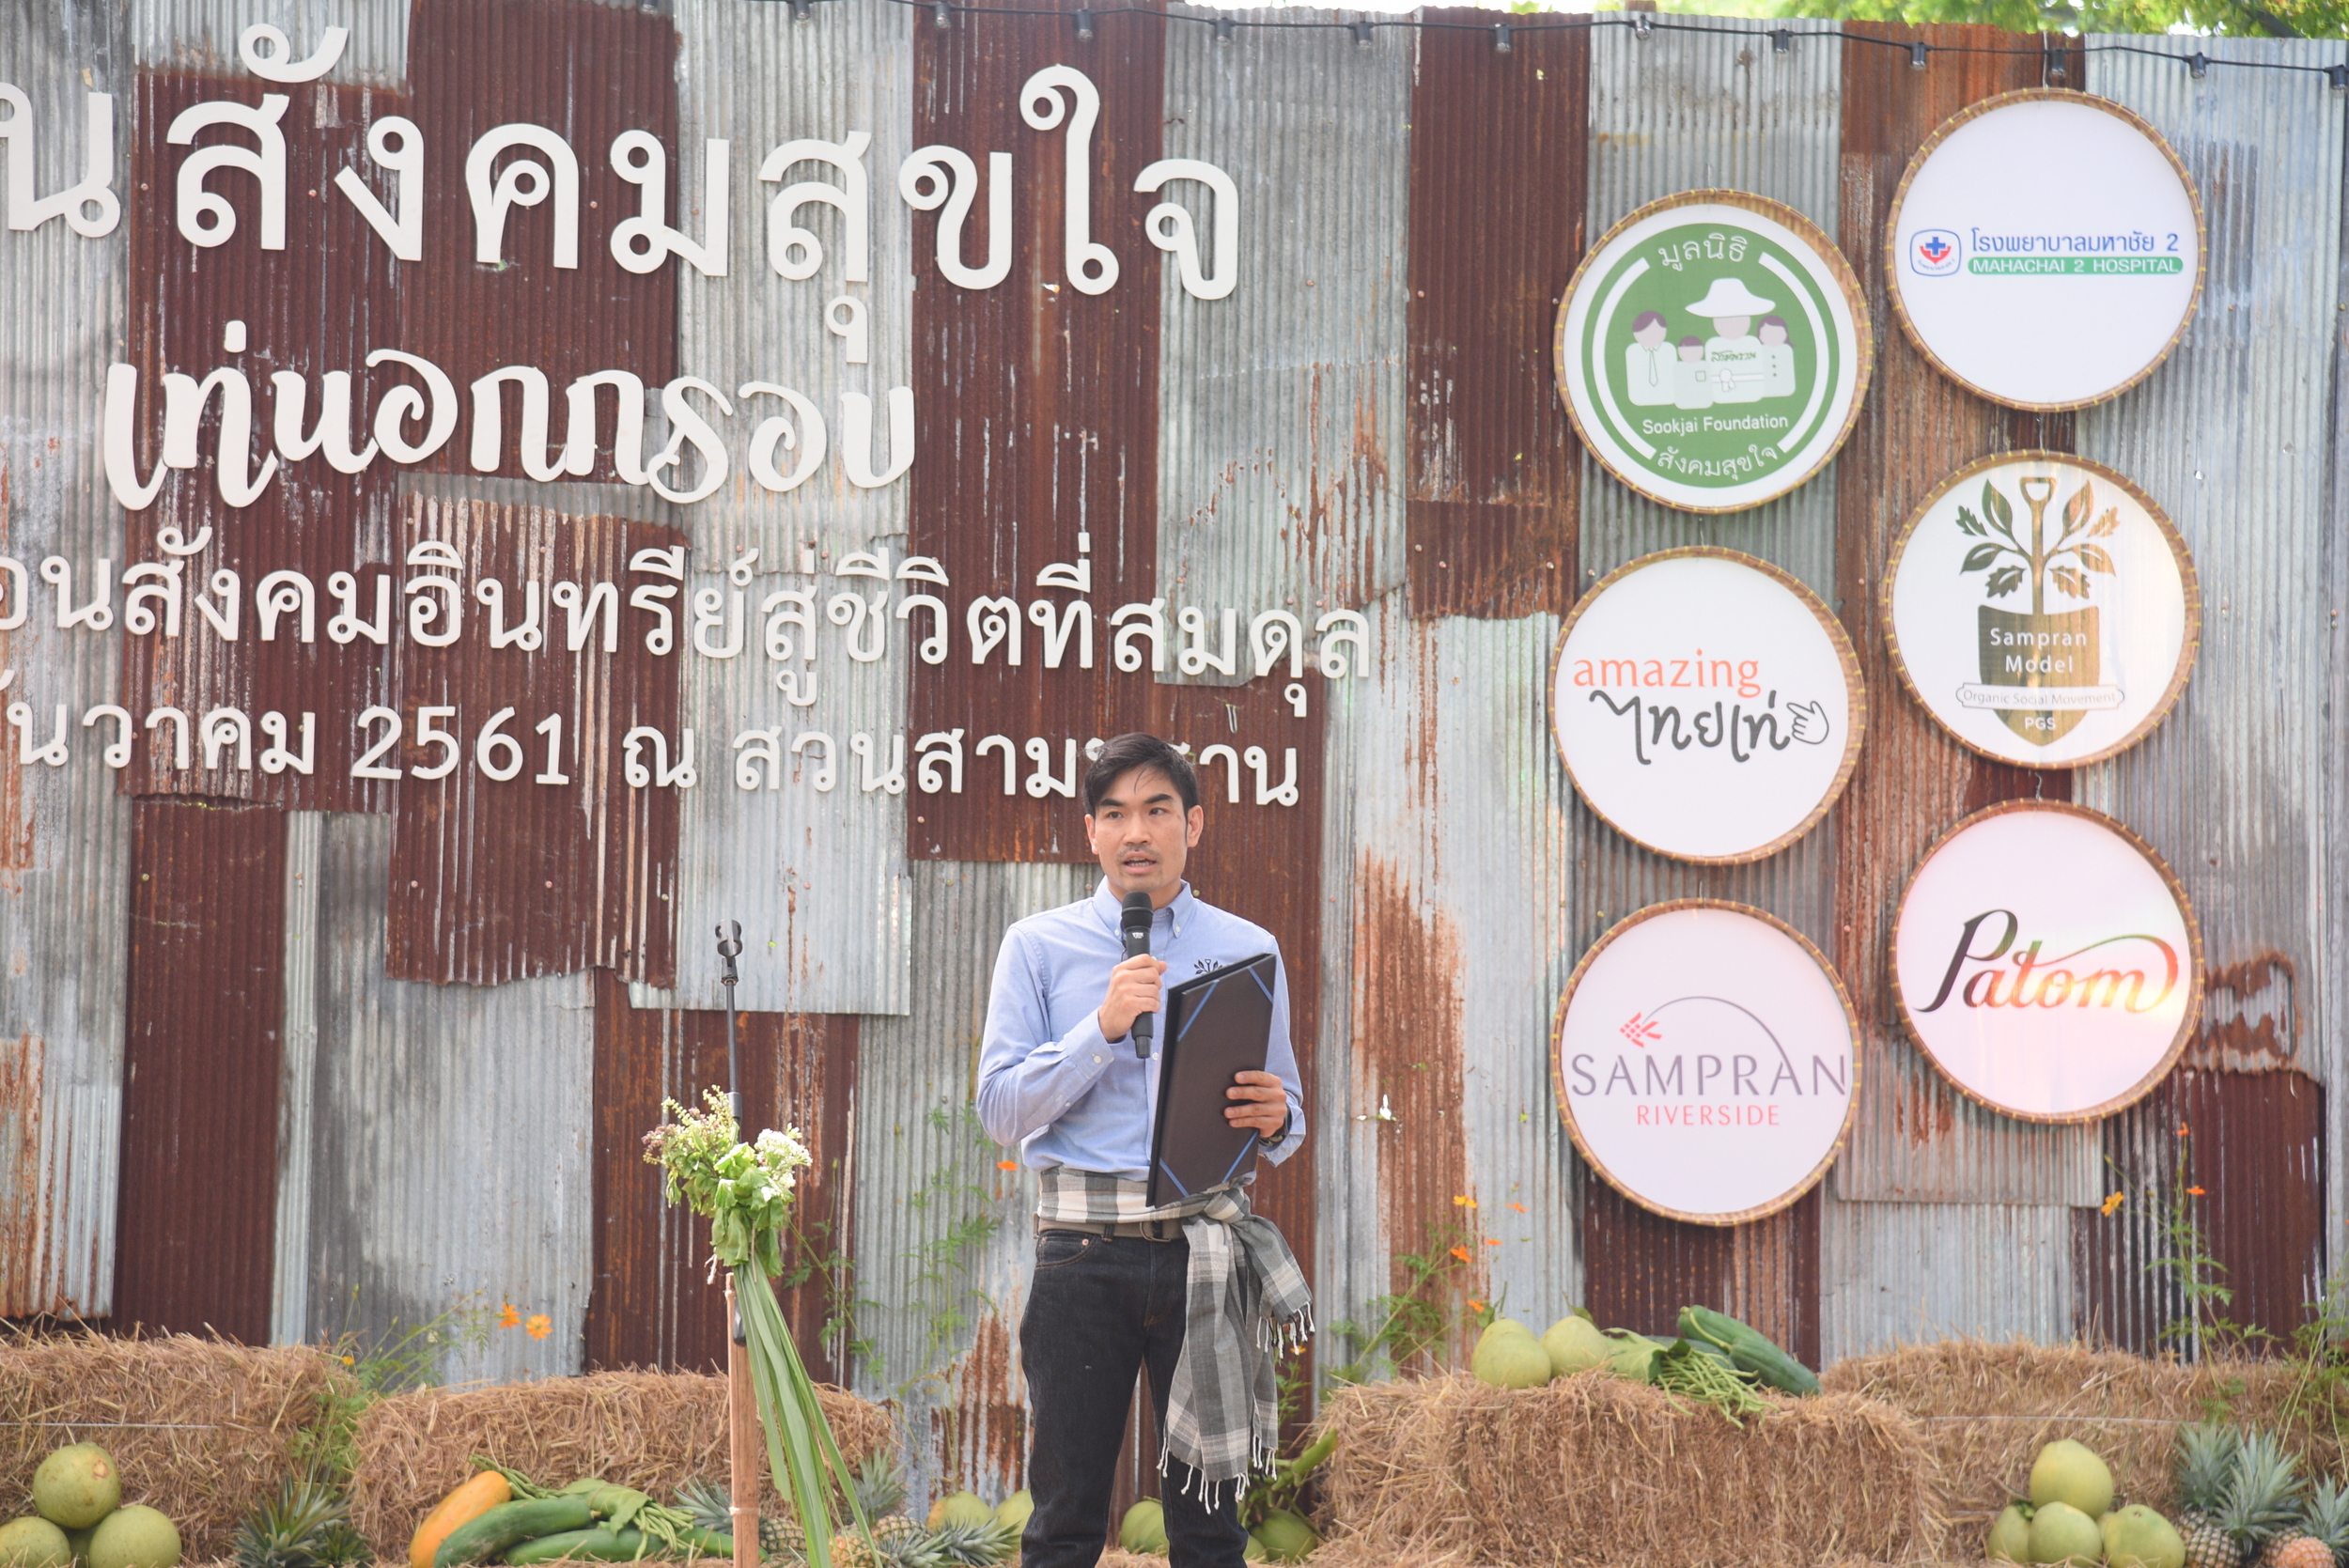 'สามพรานโมเดล' สร้างสมดุลสังคมสุขภาพ-สิ่งแวดล้อม thaihealth